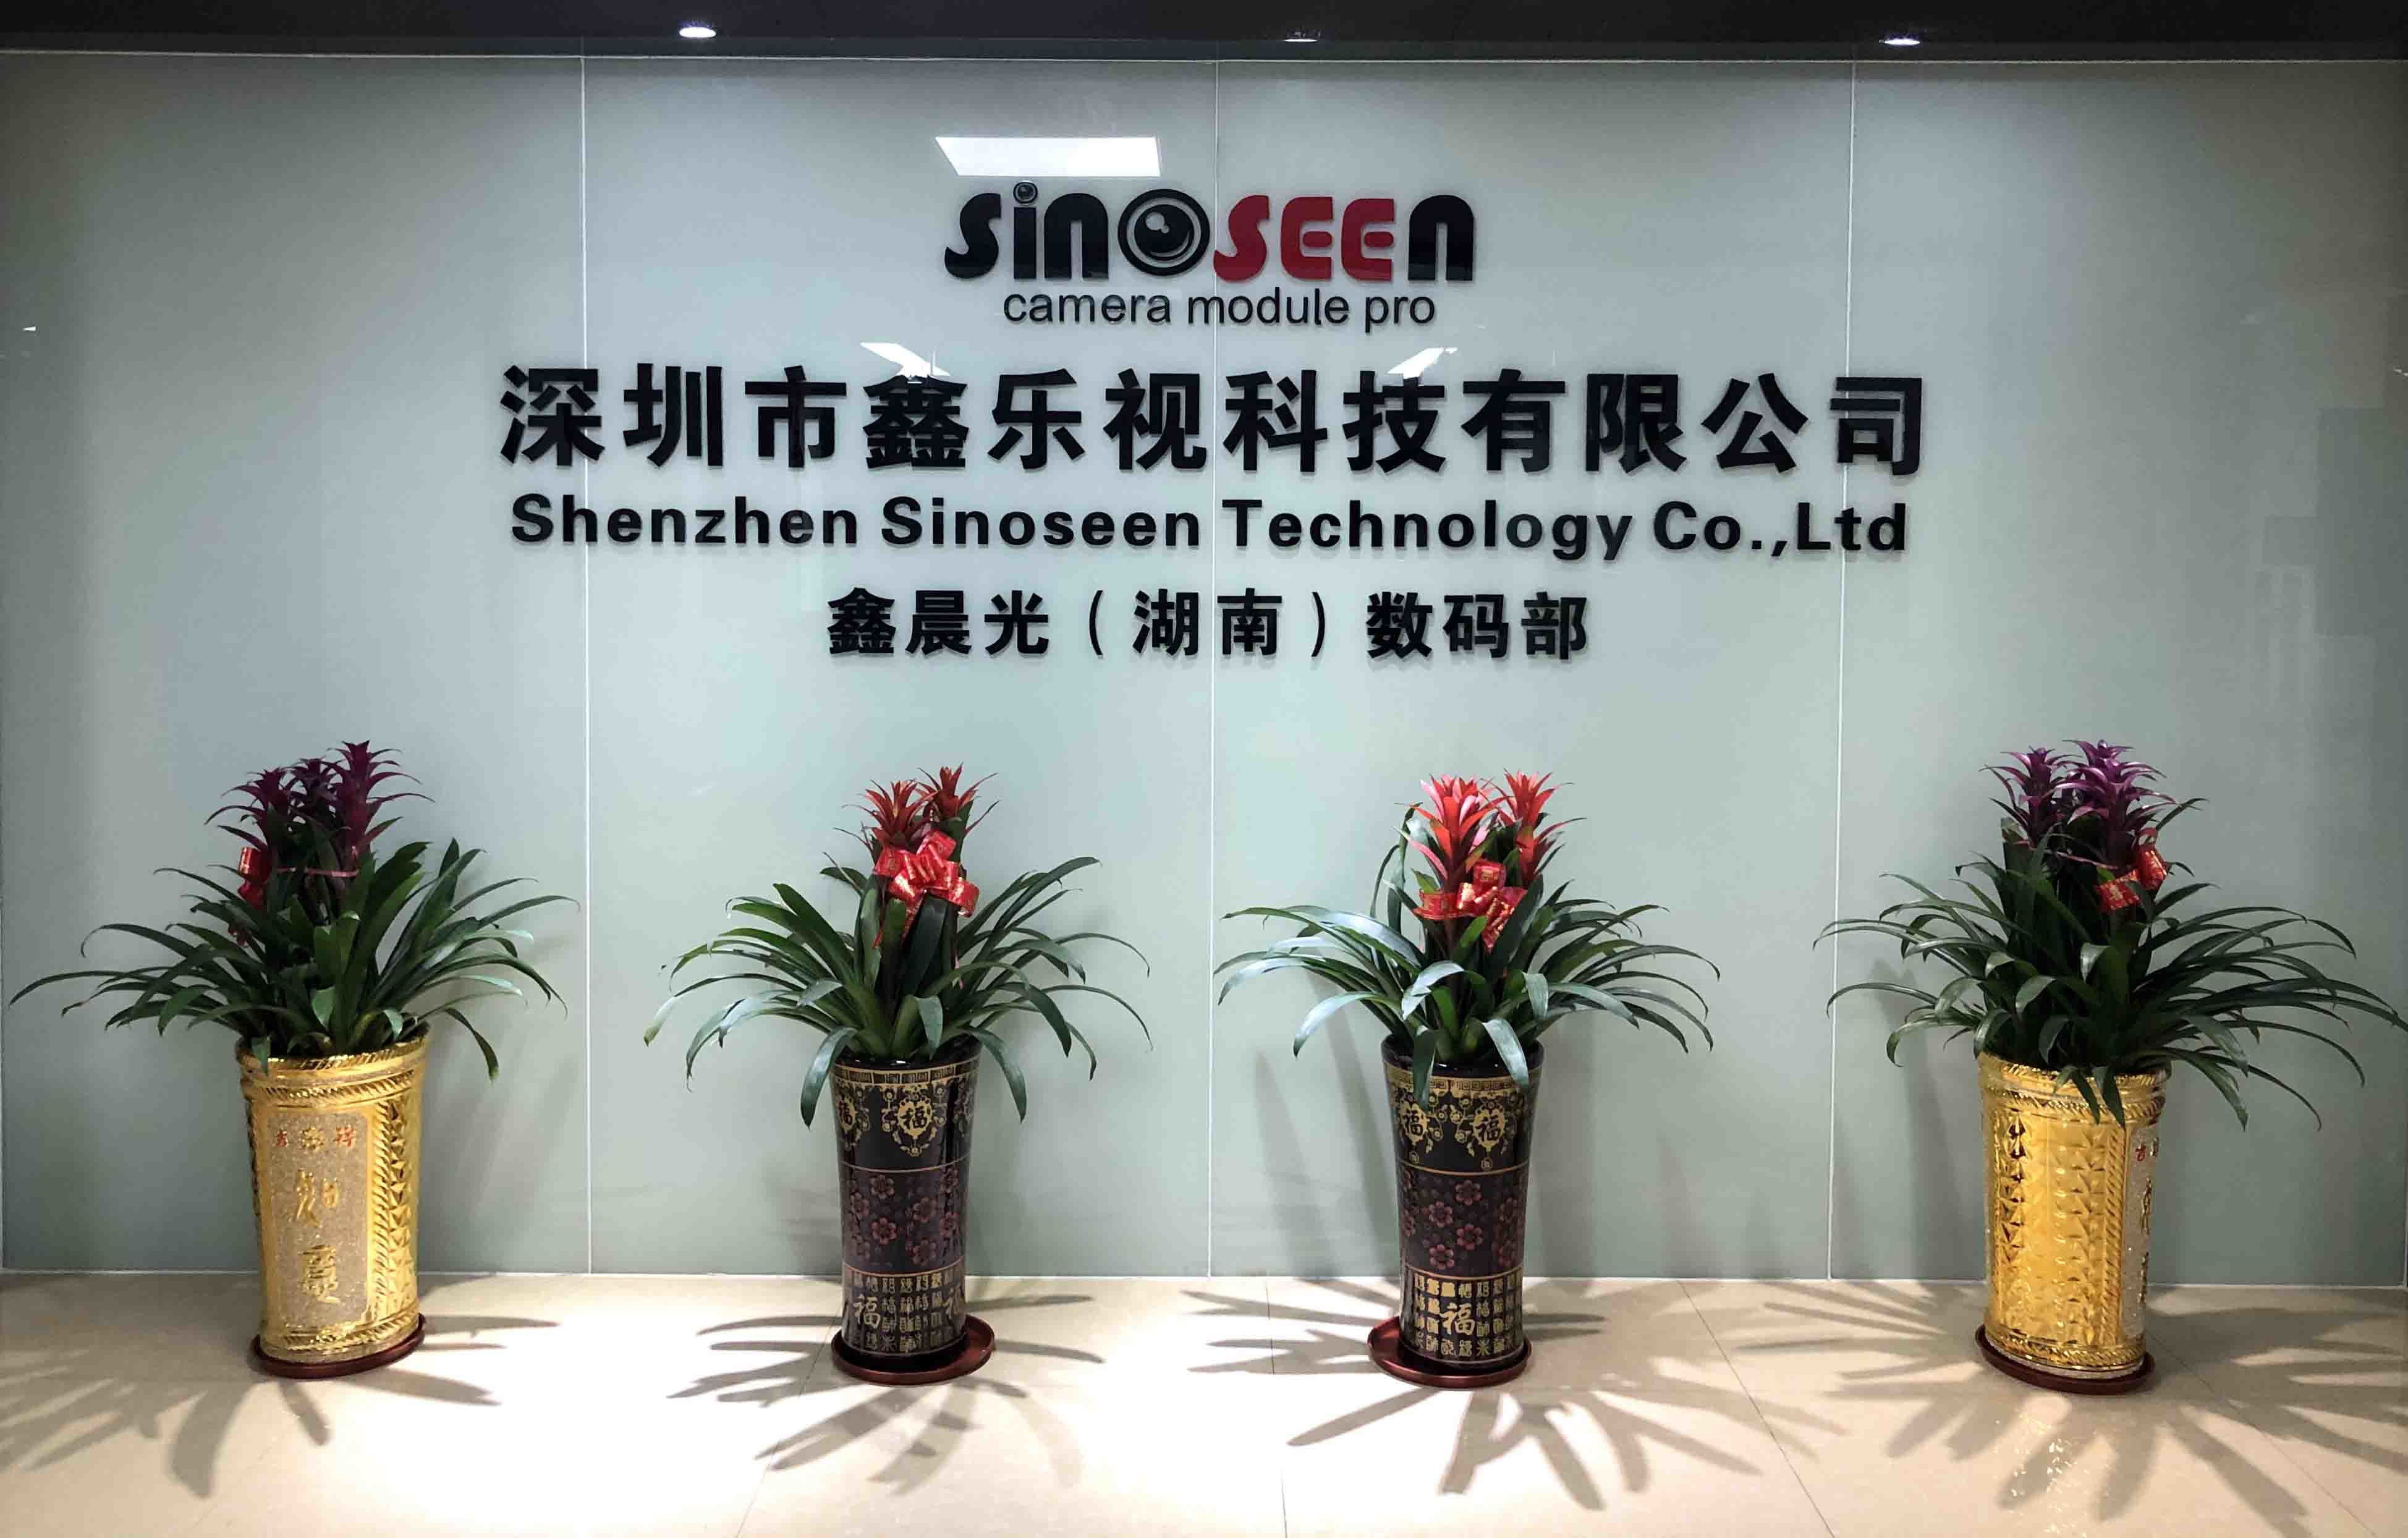 Cina Shenzhen Sinoseen Technology Co., Ltd